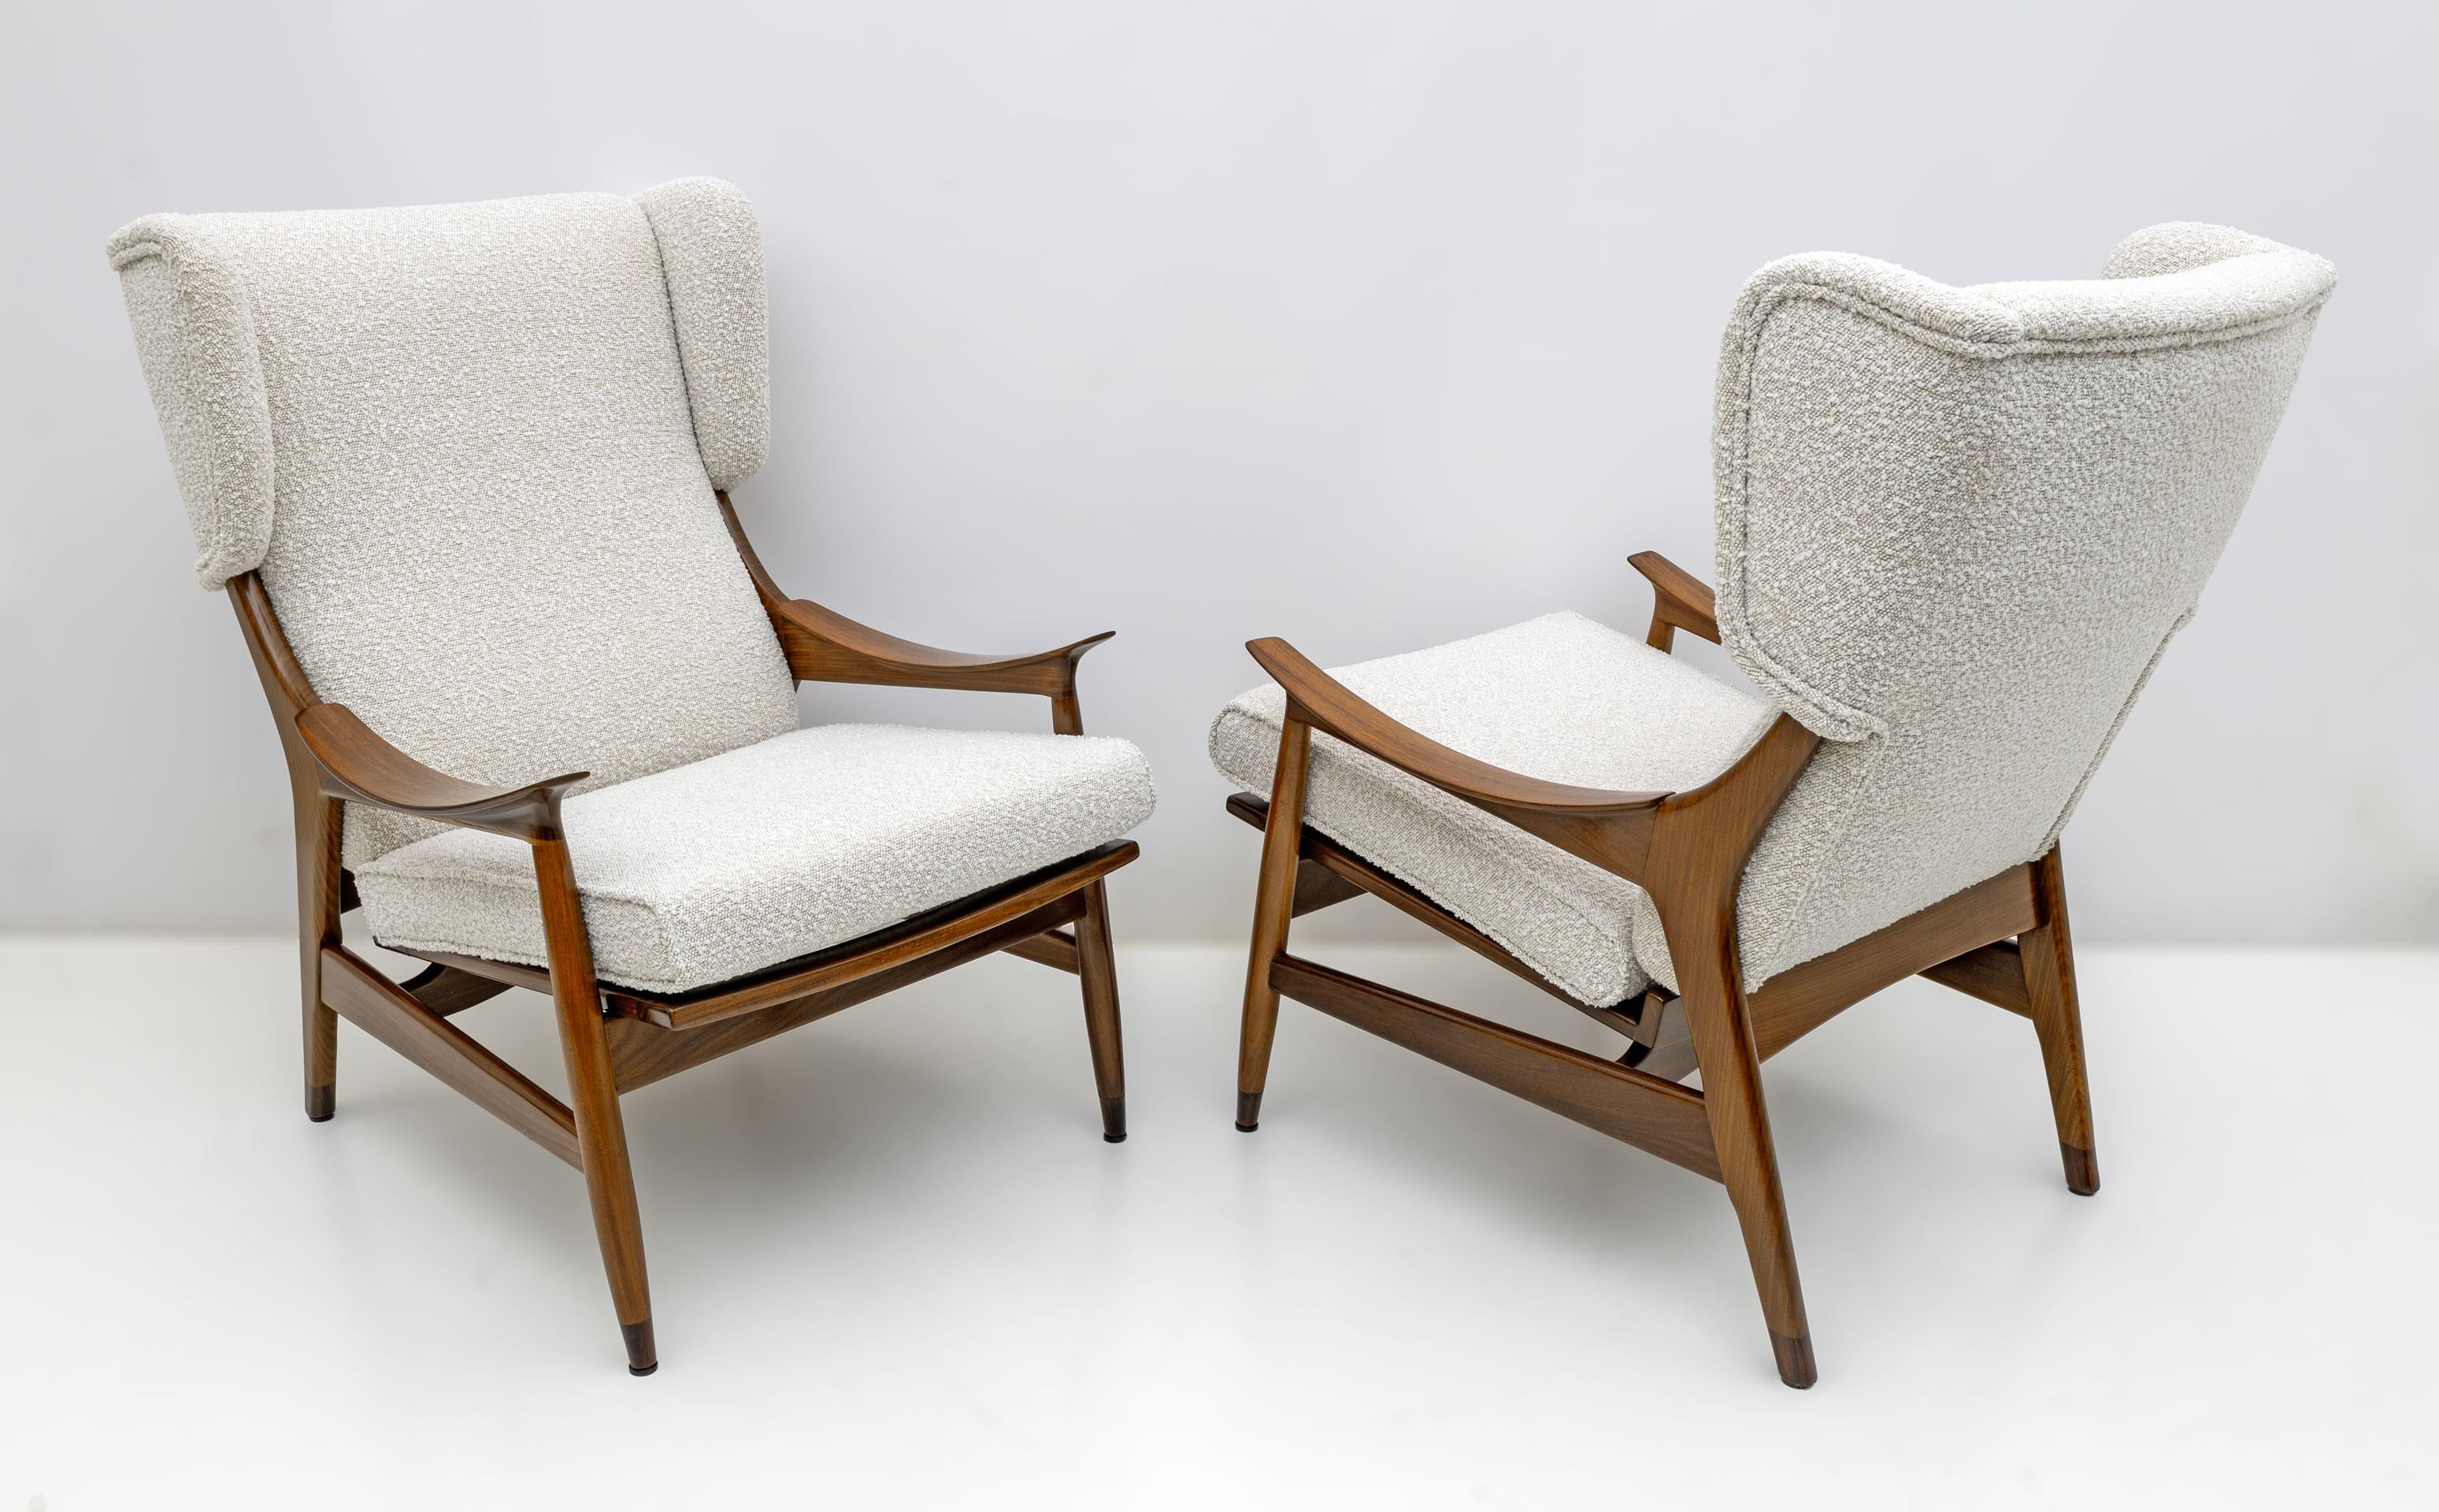 Dieses Paar spektakulärer Sessel wurde in den 1950er Jahren in Italien von der Firma Framar (Fratelli Marelli) hergestellt! Mit ihrem leichten Palisandergestell, der dezenten Rückenlehne und den geschwungenen Armlehnen repräsentieren diese Sessel